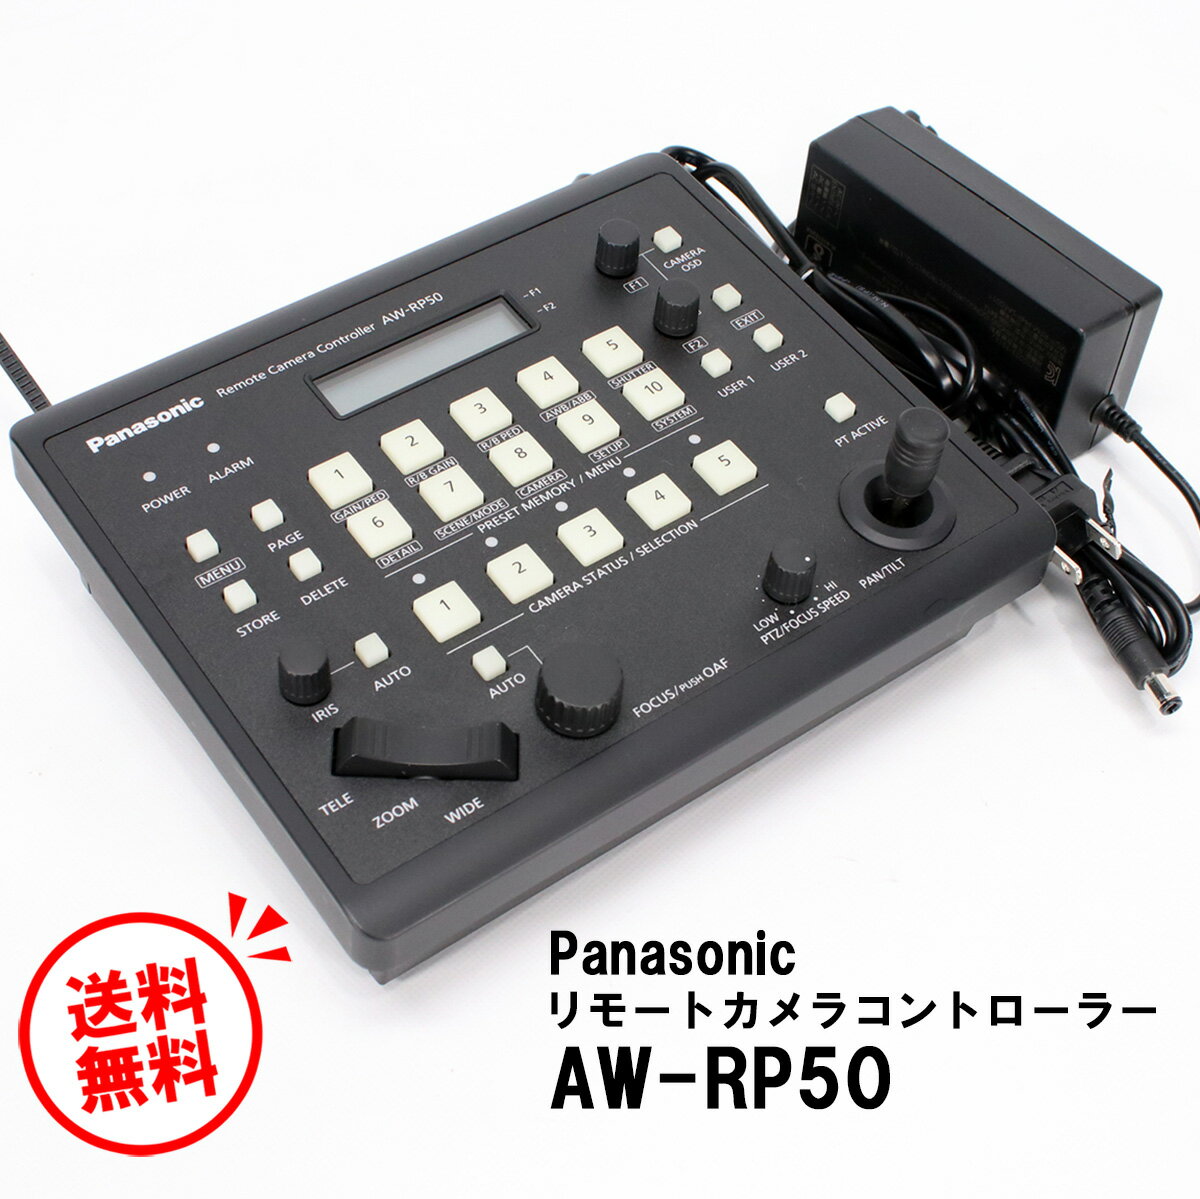 【送料無料】Panasonic パナソニック AW-RP50 リモートカメラコントローラーハーフラックサイズ 動作品テレビ会議システム 【 中古 1か月保証有り 】